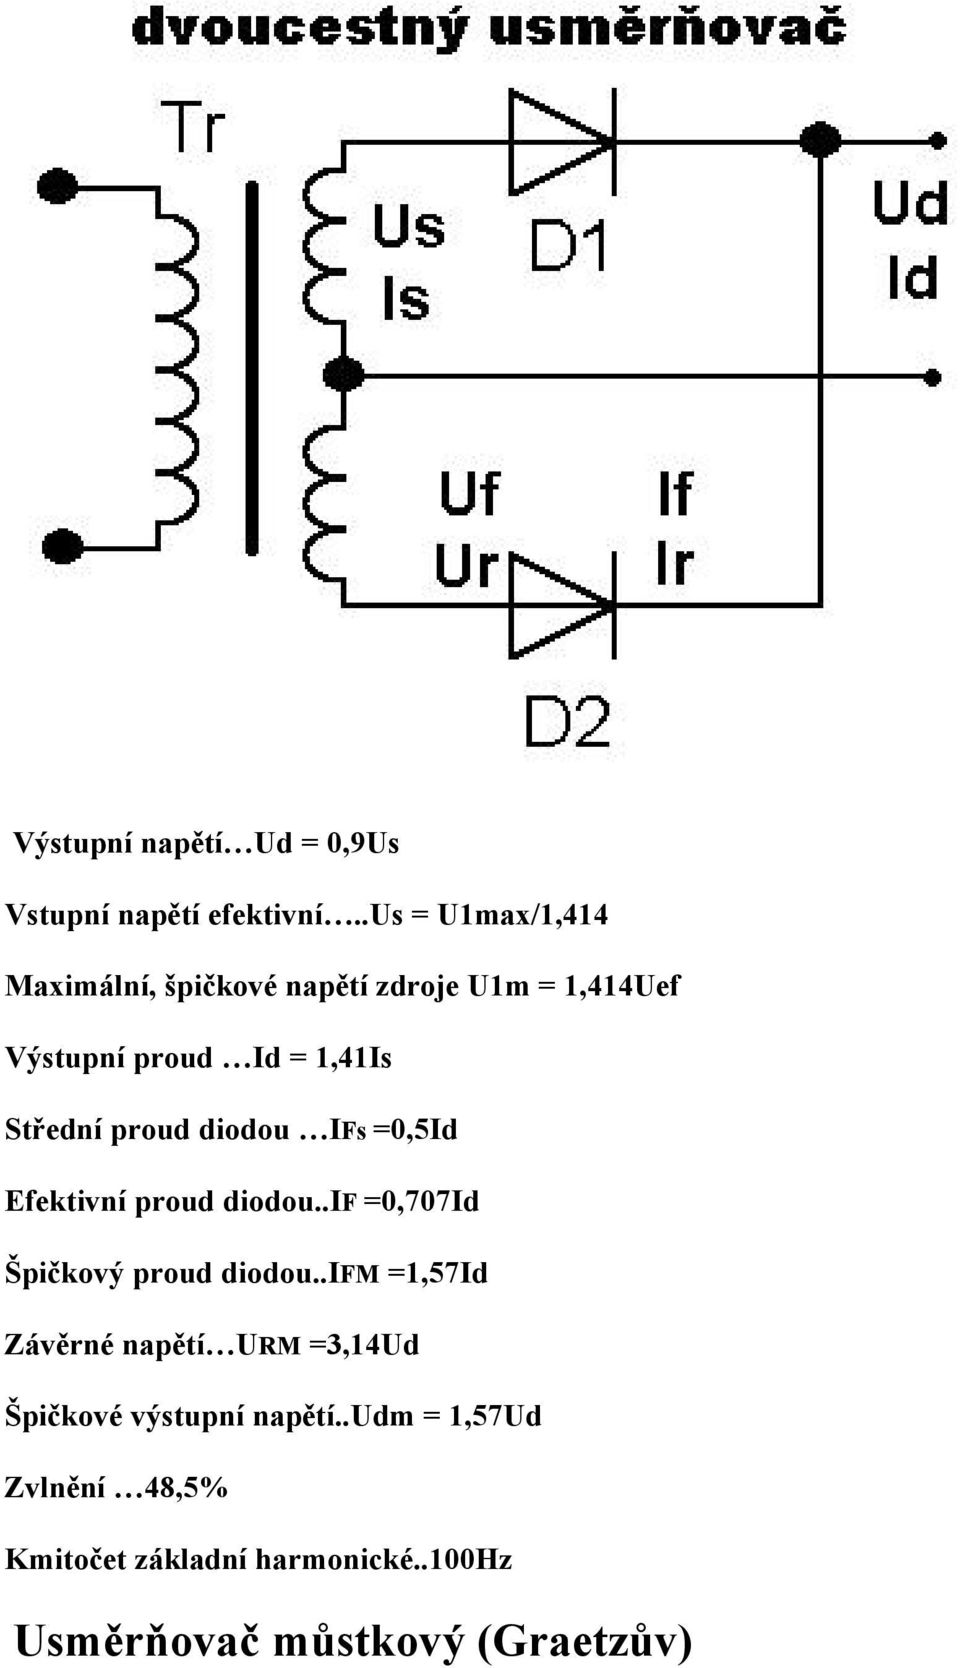 Středná proud diodou IFs =0,5Id Efektivná proud diodou..if =0,707Id Špičkovâ proud diodou.